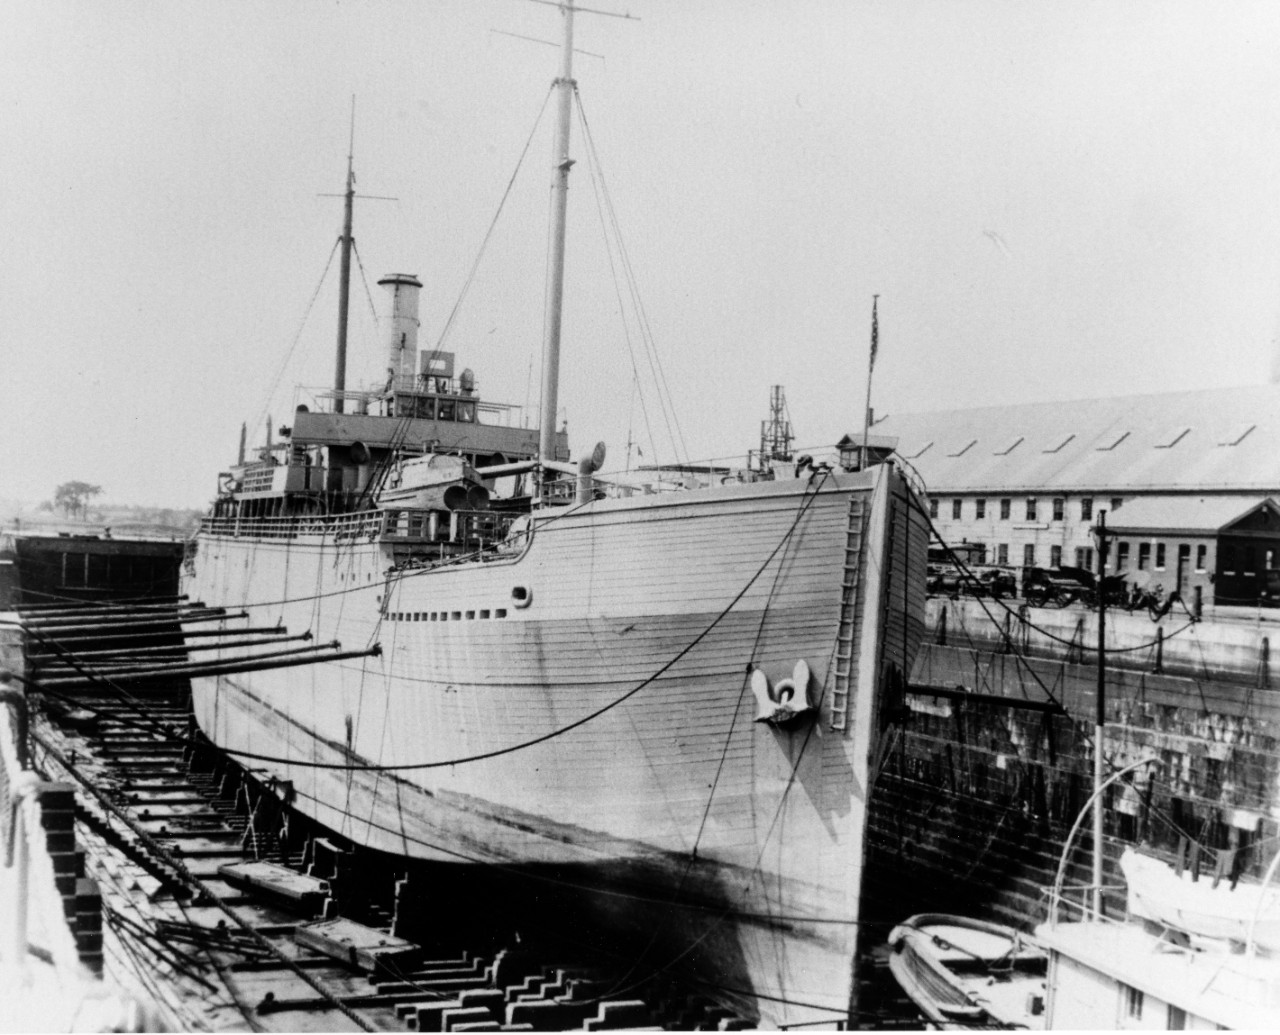 USS MANHANNA (AG-8)